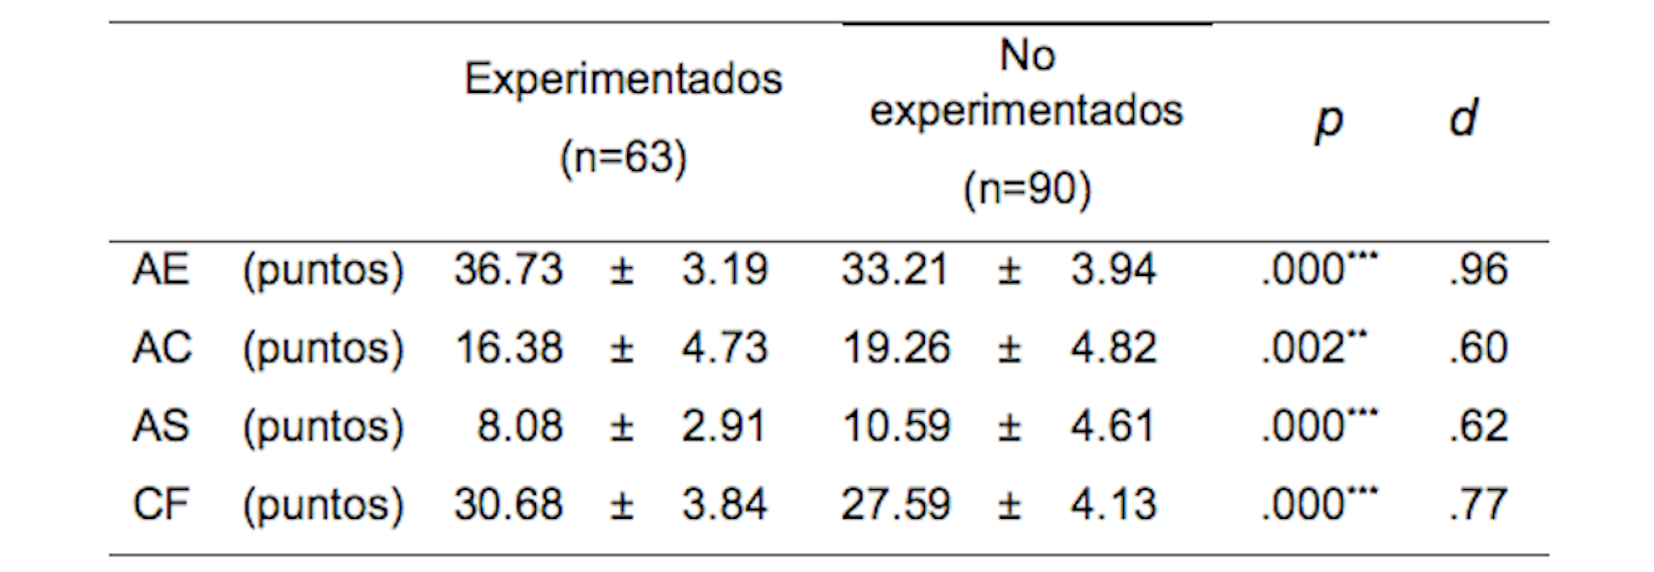 Media ± desviación típica de las respuestas psicológicas previas a la competición según la experiencia.